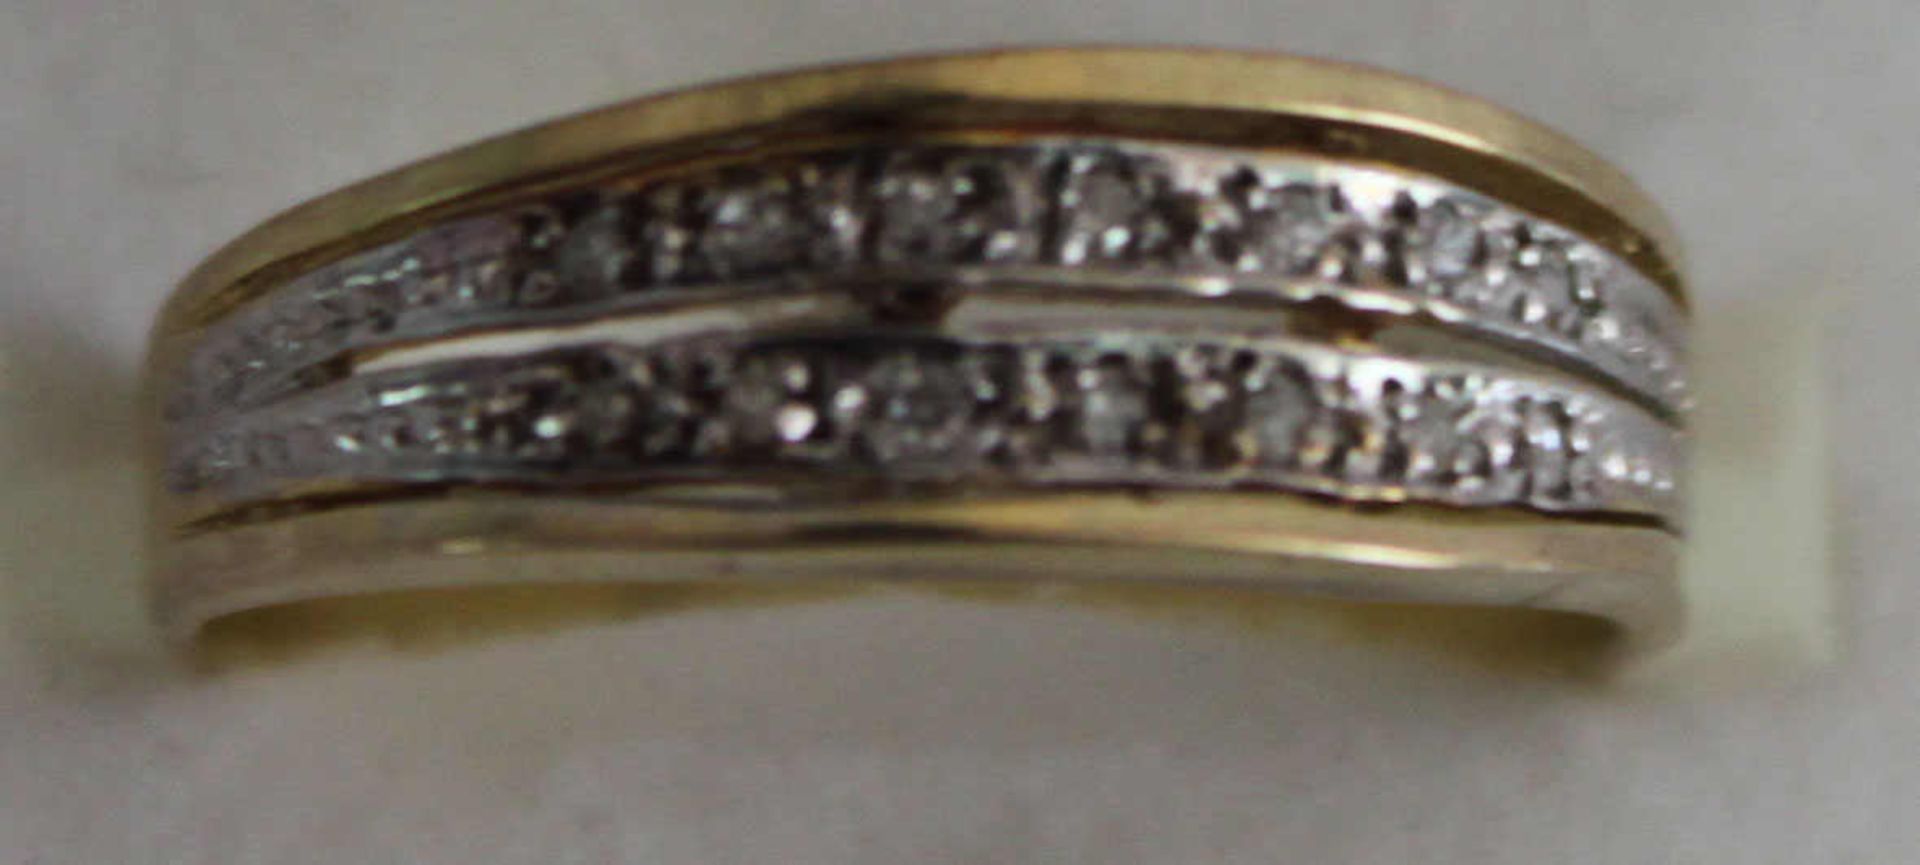 Damenring, 333er Gelbgold, besetzt mit Brilliantsplittern, Ringgröße 56, Gewicht ca. 2